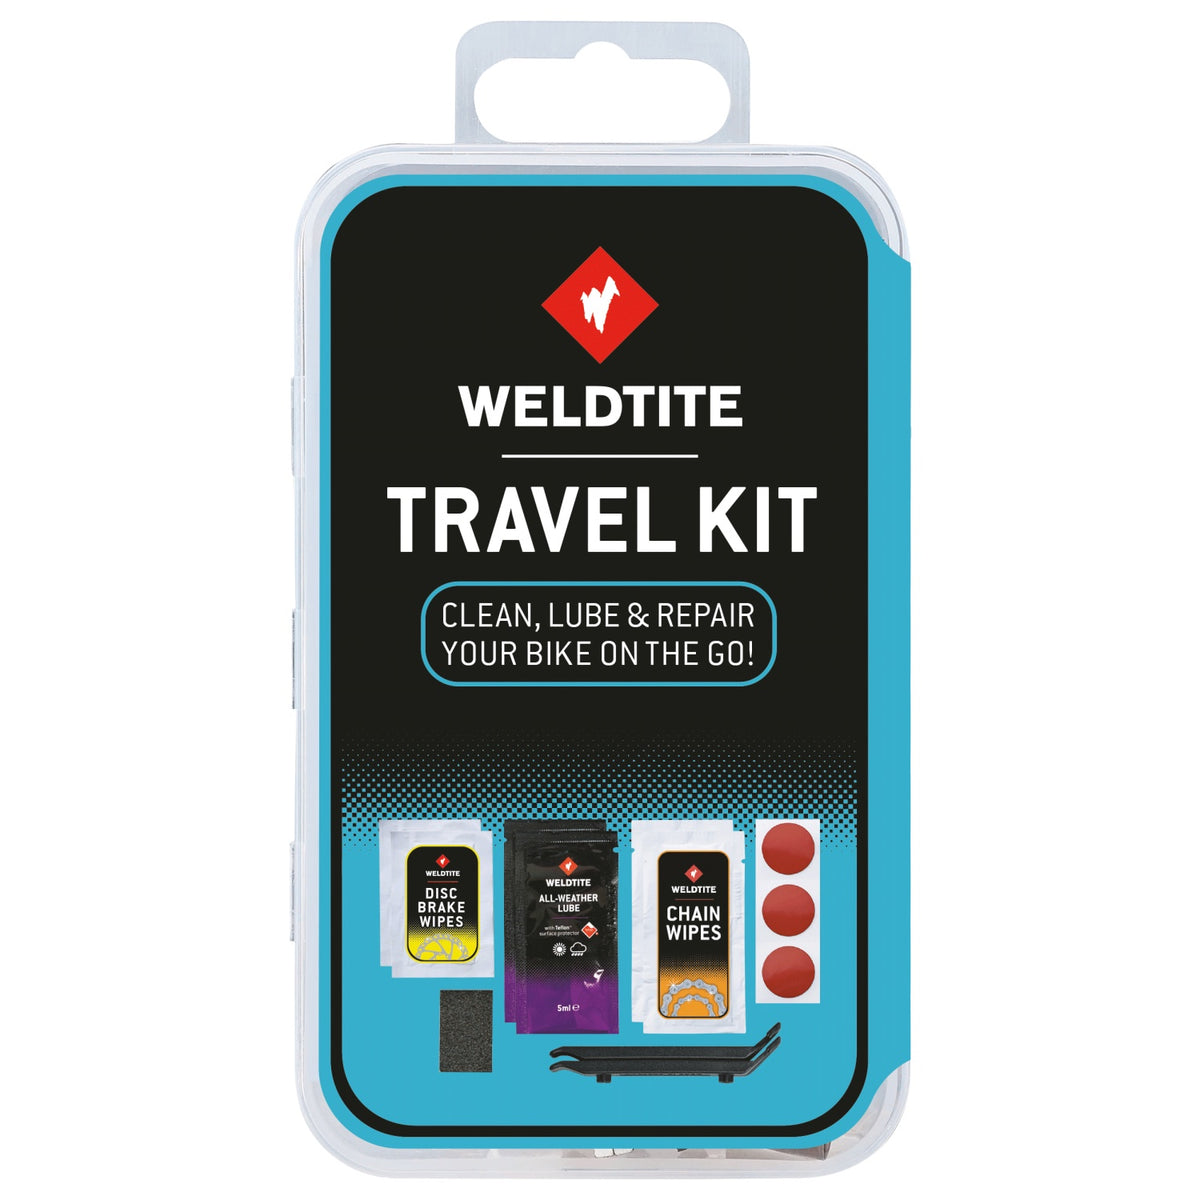 Weldtite SOS Travel Kit